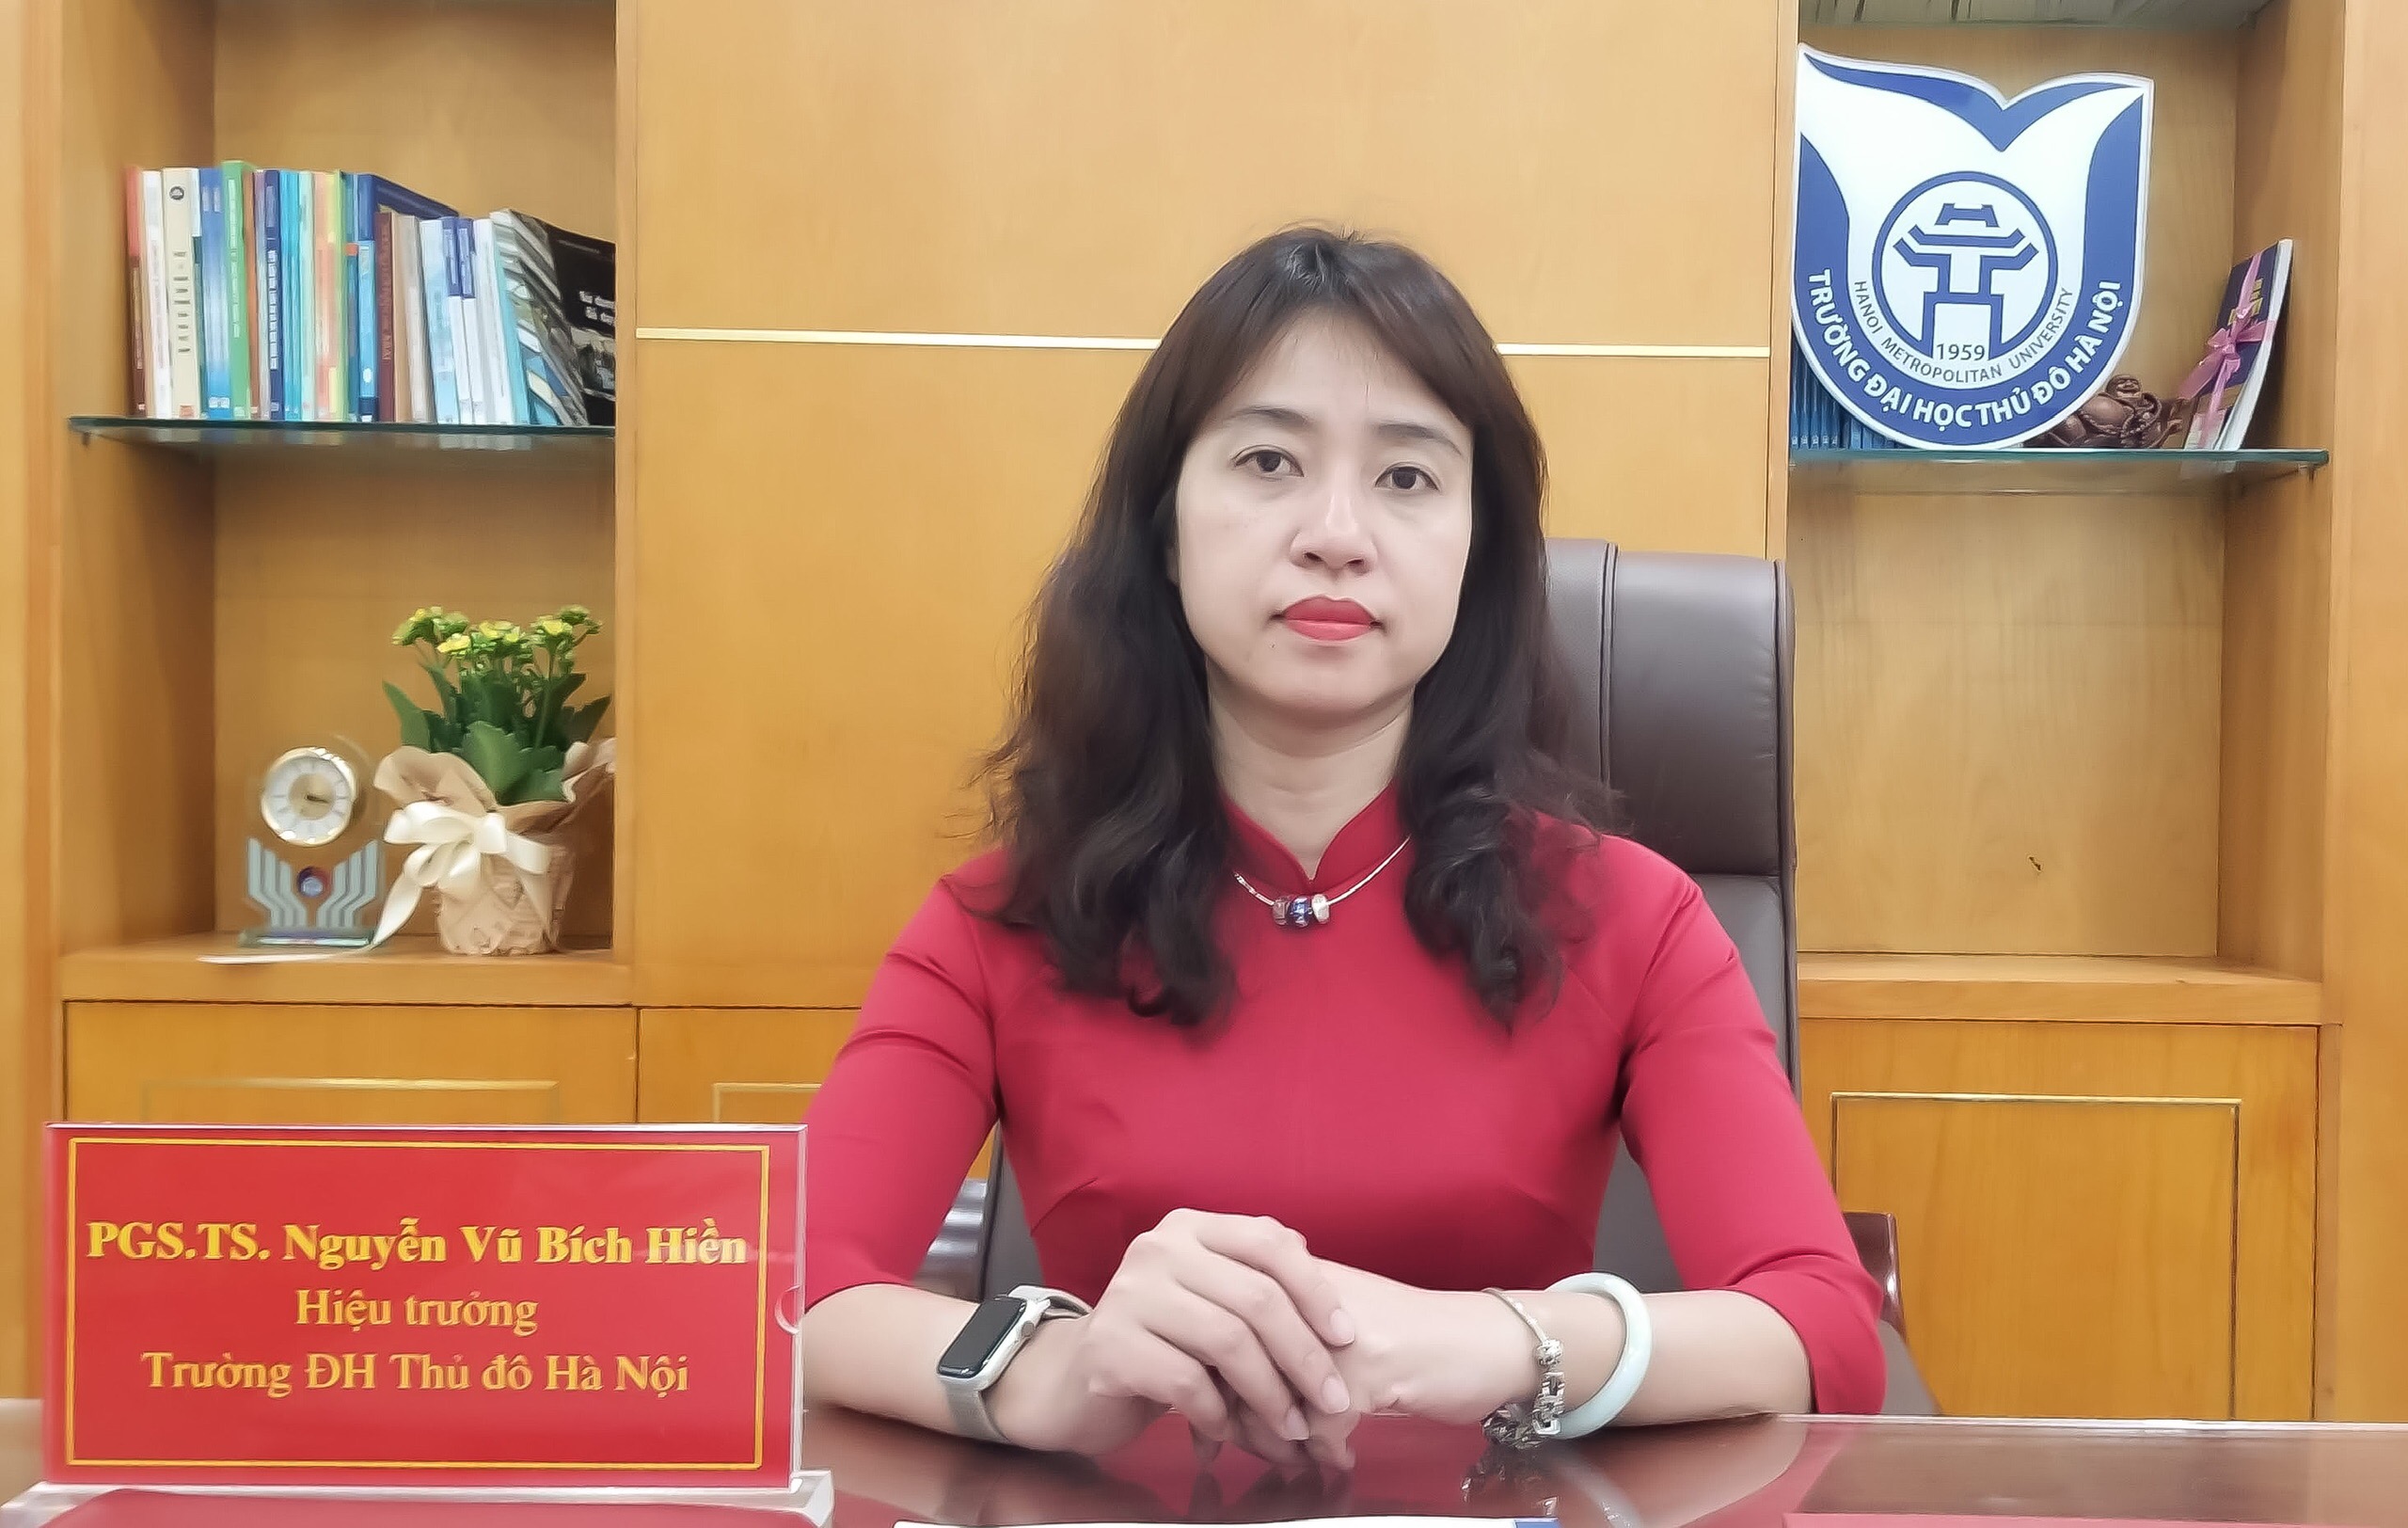 Thông điệp của Hiệu trưởng trường Đại học Thủ đô Hà Nội gửi tới giảng viên, sinh viên nhân dịp bắt đầu năm học mới